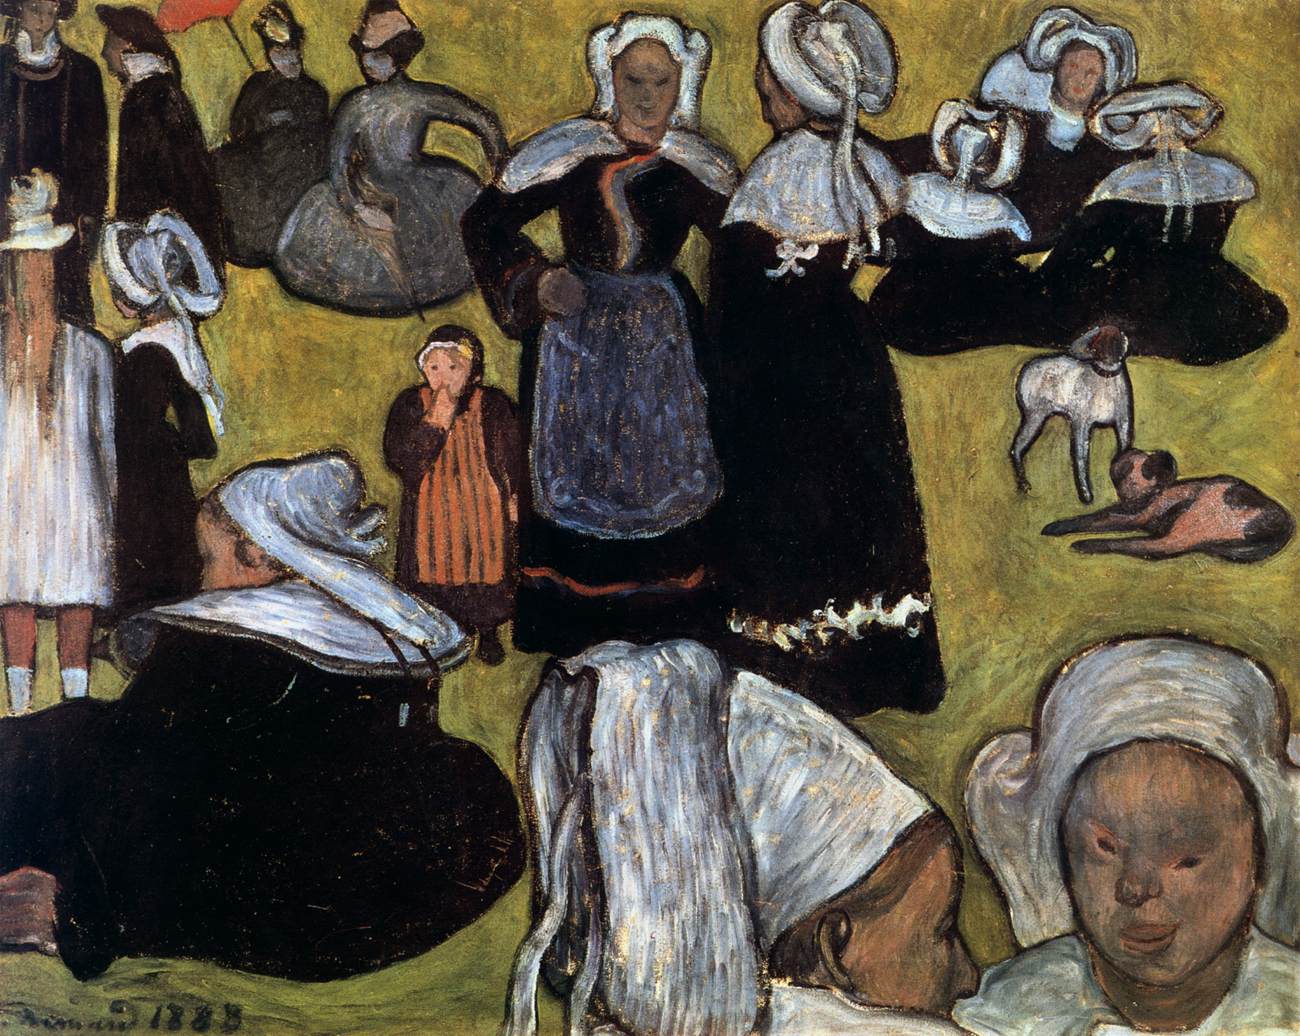 Mulheres bretãs em um prado